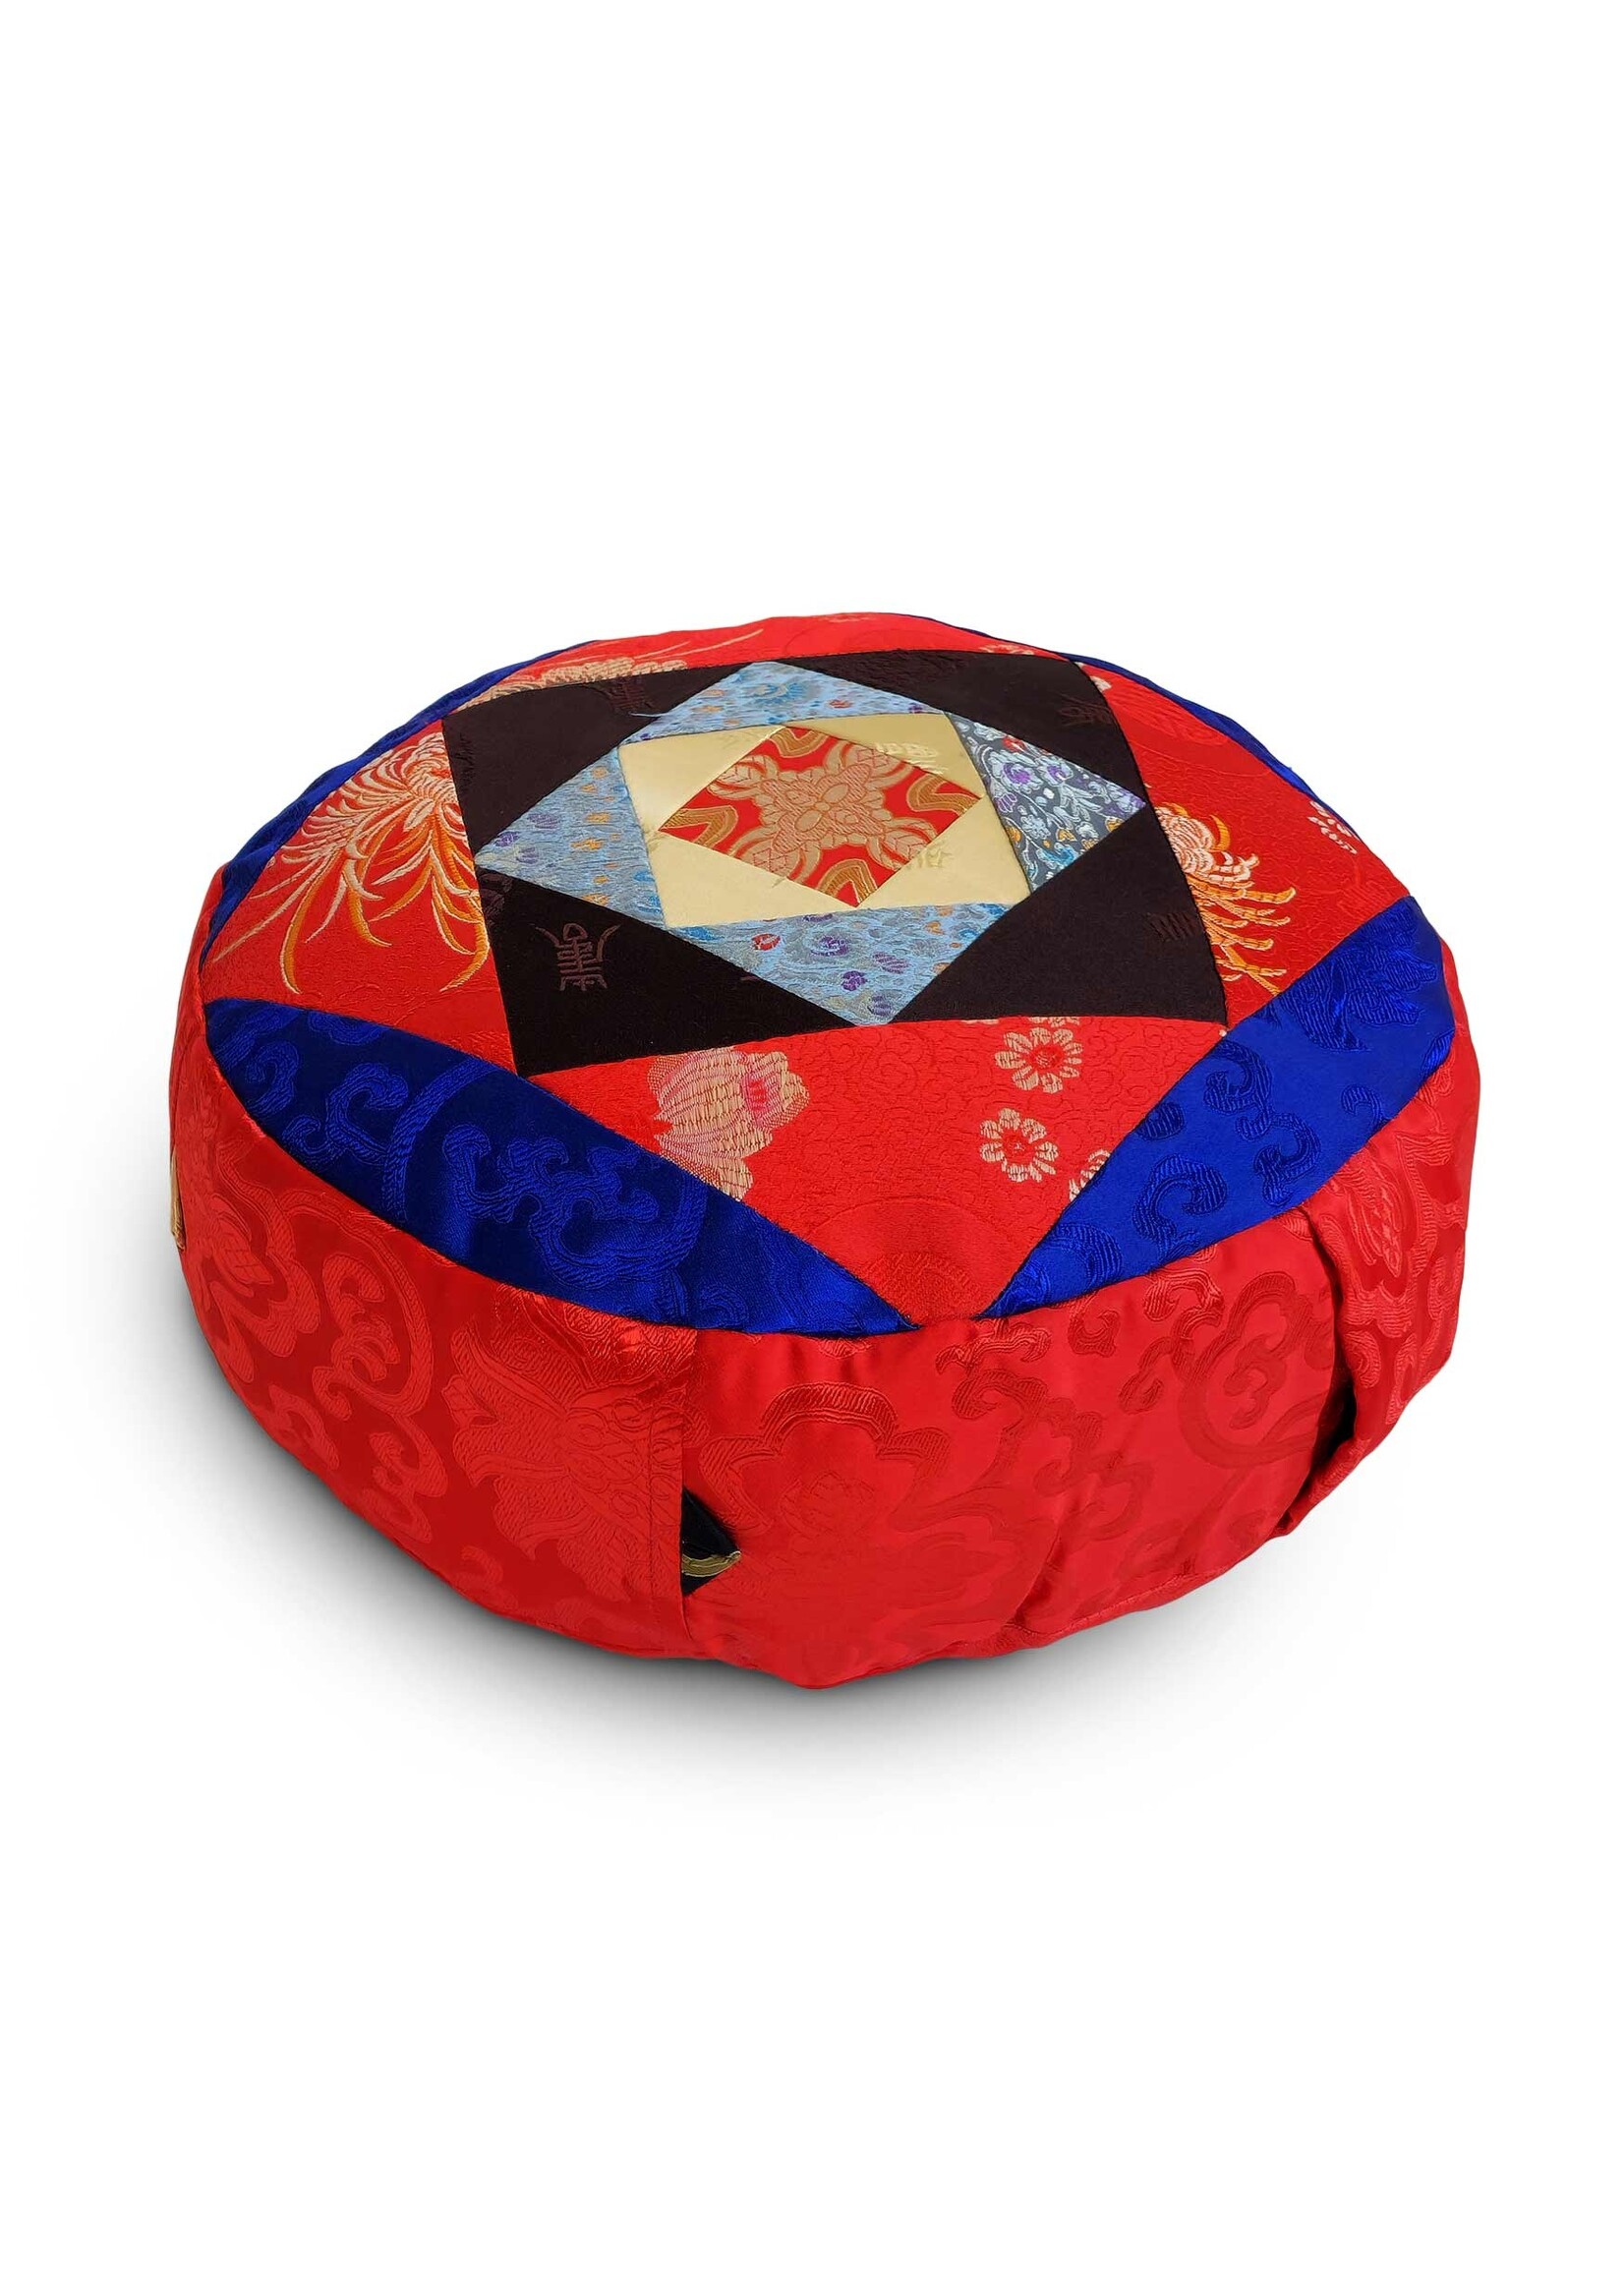 Cuscino da meditazione tibetano Zafu, realizzato in broccato di seta con imbottitura in Kapok, rosso